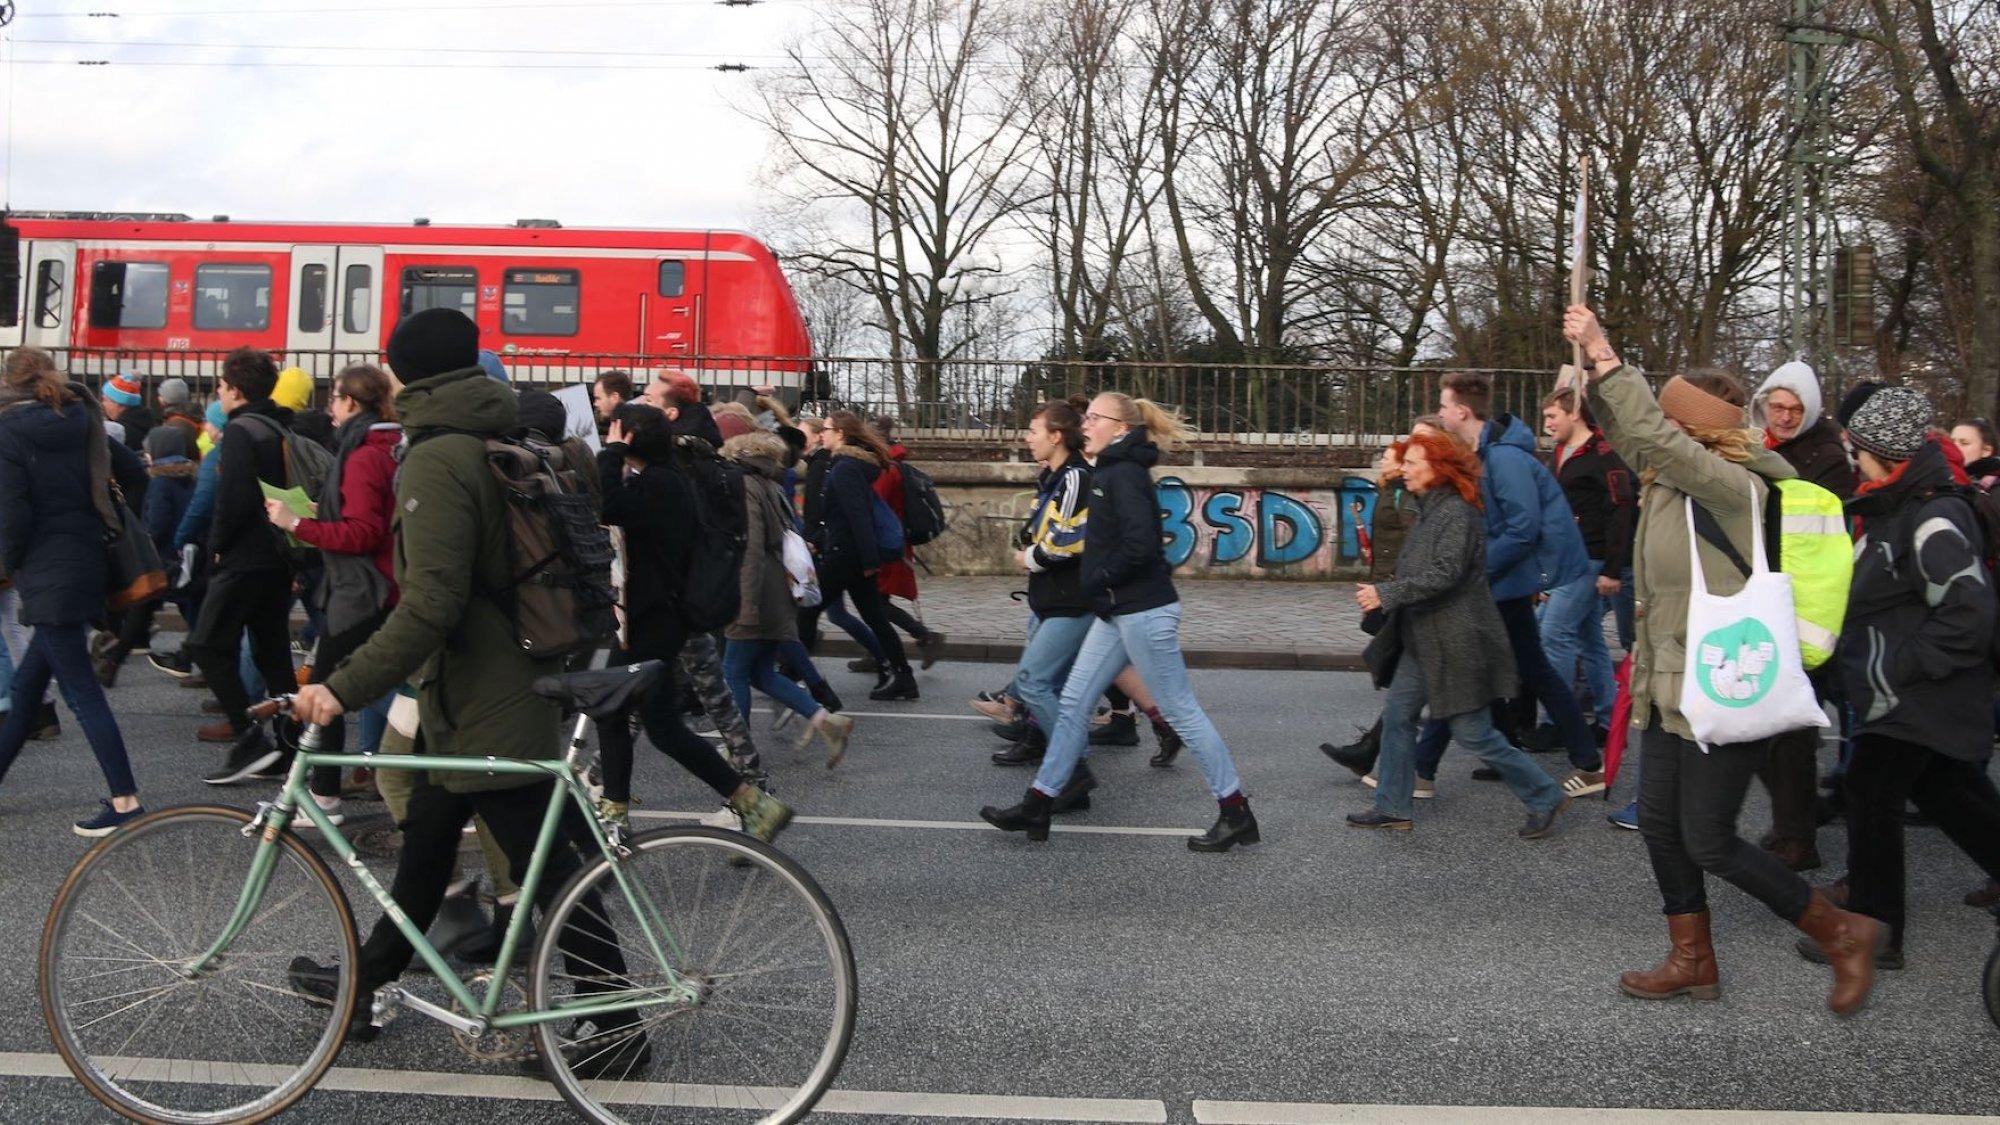 Schüler gehen bei einem Schulstreik in Hamburg über die Lombardsbrücke; einer schiebt ein Fahrrad mit, im Hintergrund fährt die S-Bahn vorbei. Solche Demonstrationen markieren den Aufbruch in eine neue Zeit: Sie haben die Bundespolitik verändert und die Europawahl zu einer Abstimmung werden lassen, die stark von der Reaktion auf die Klimakrise geprägt war.